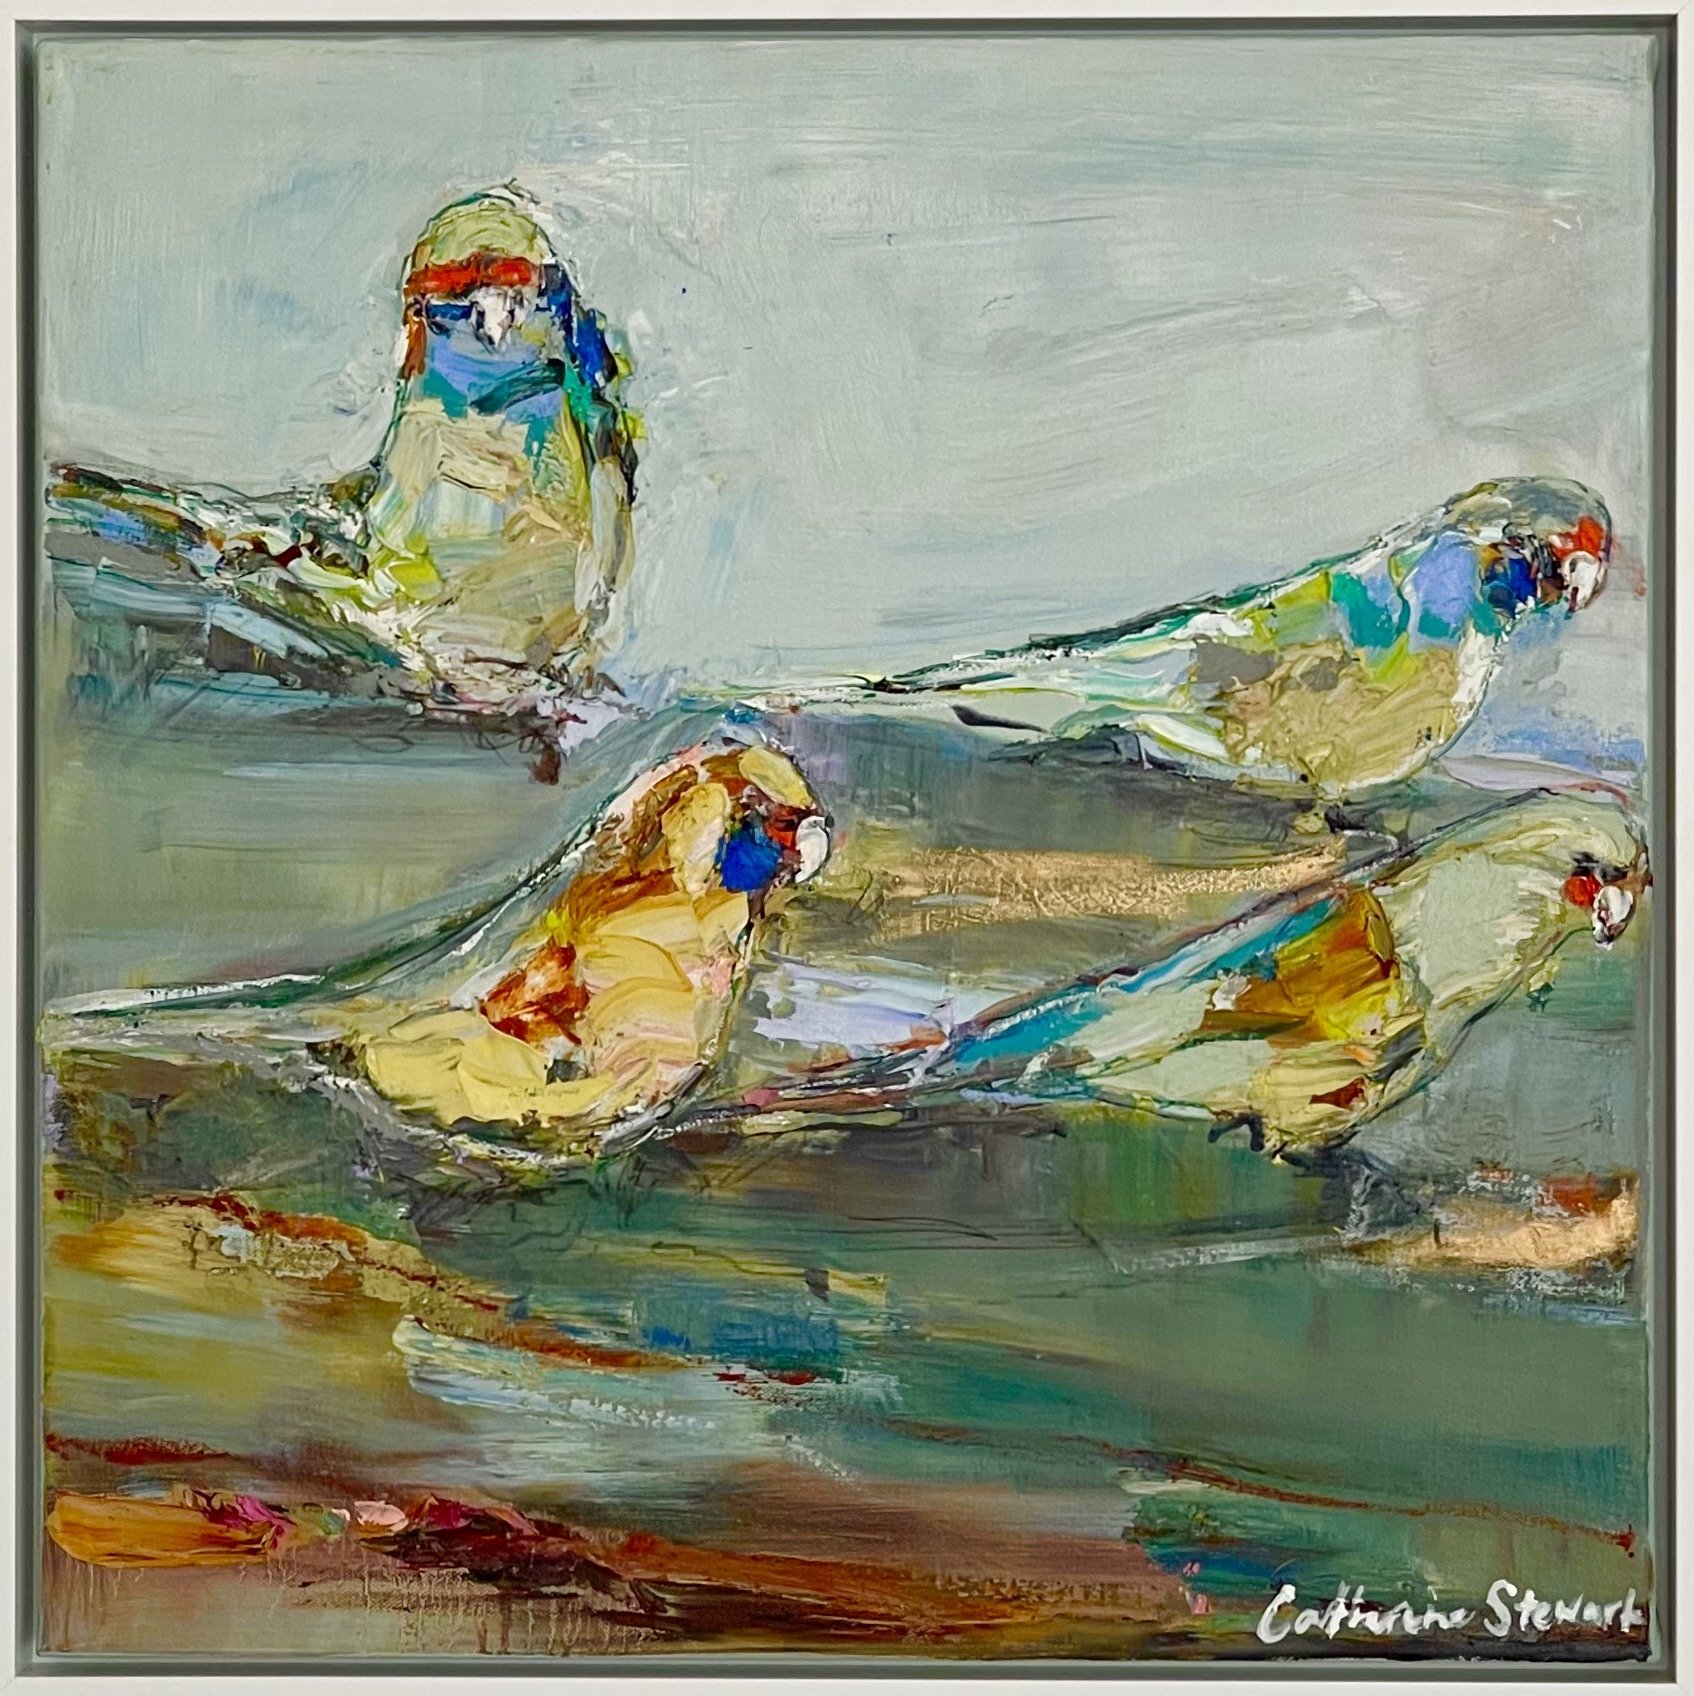 CATHERINE STEWART Parrots on Dusk 50x50cm framed oil on linen $800